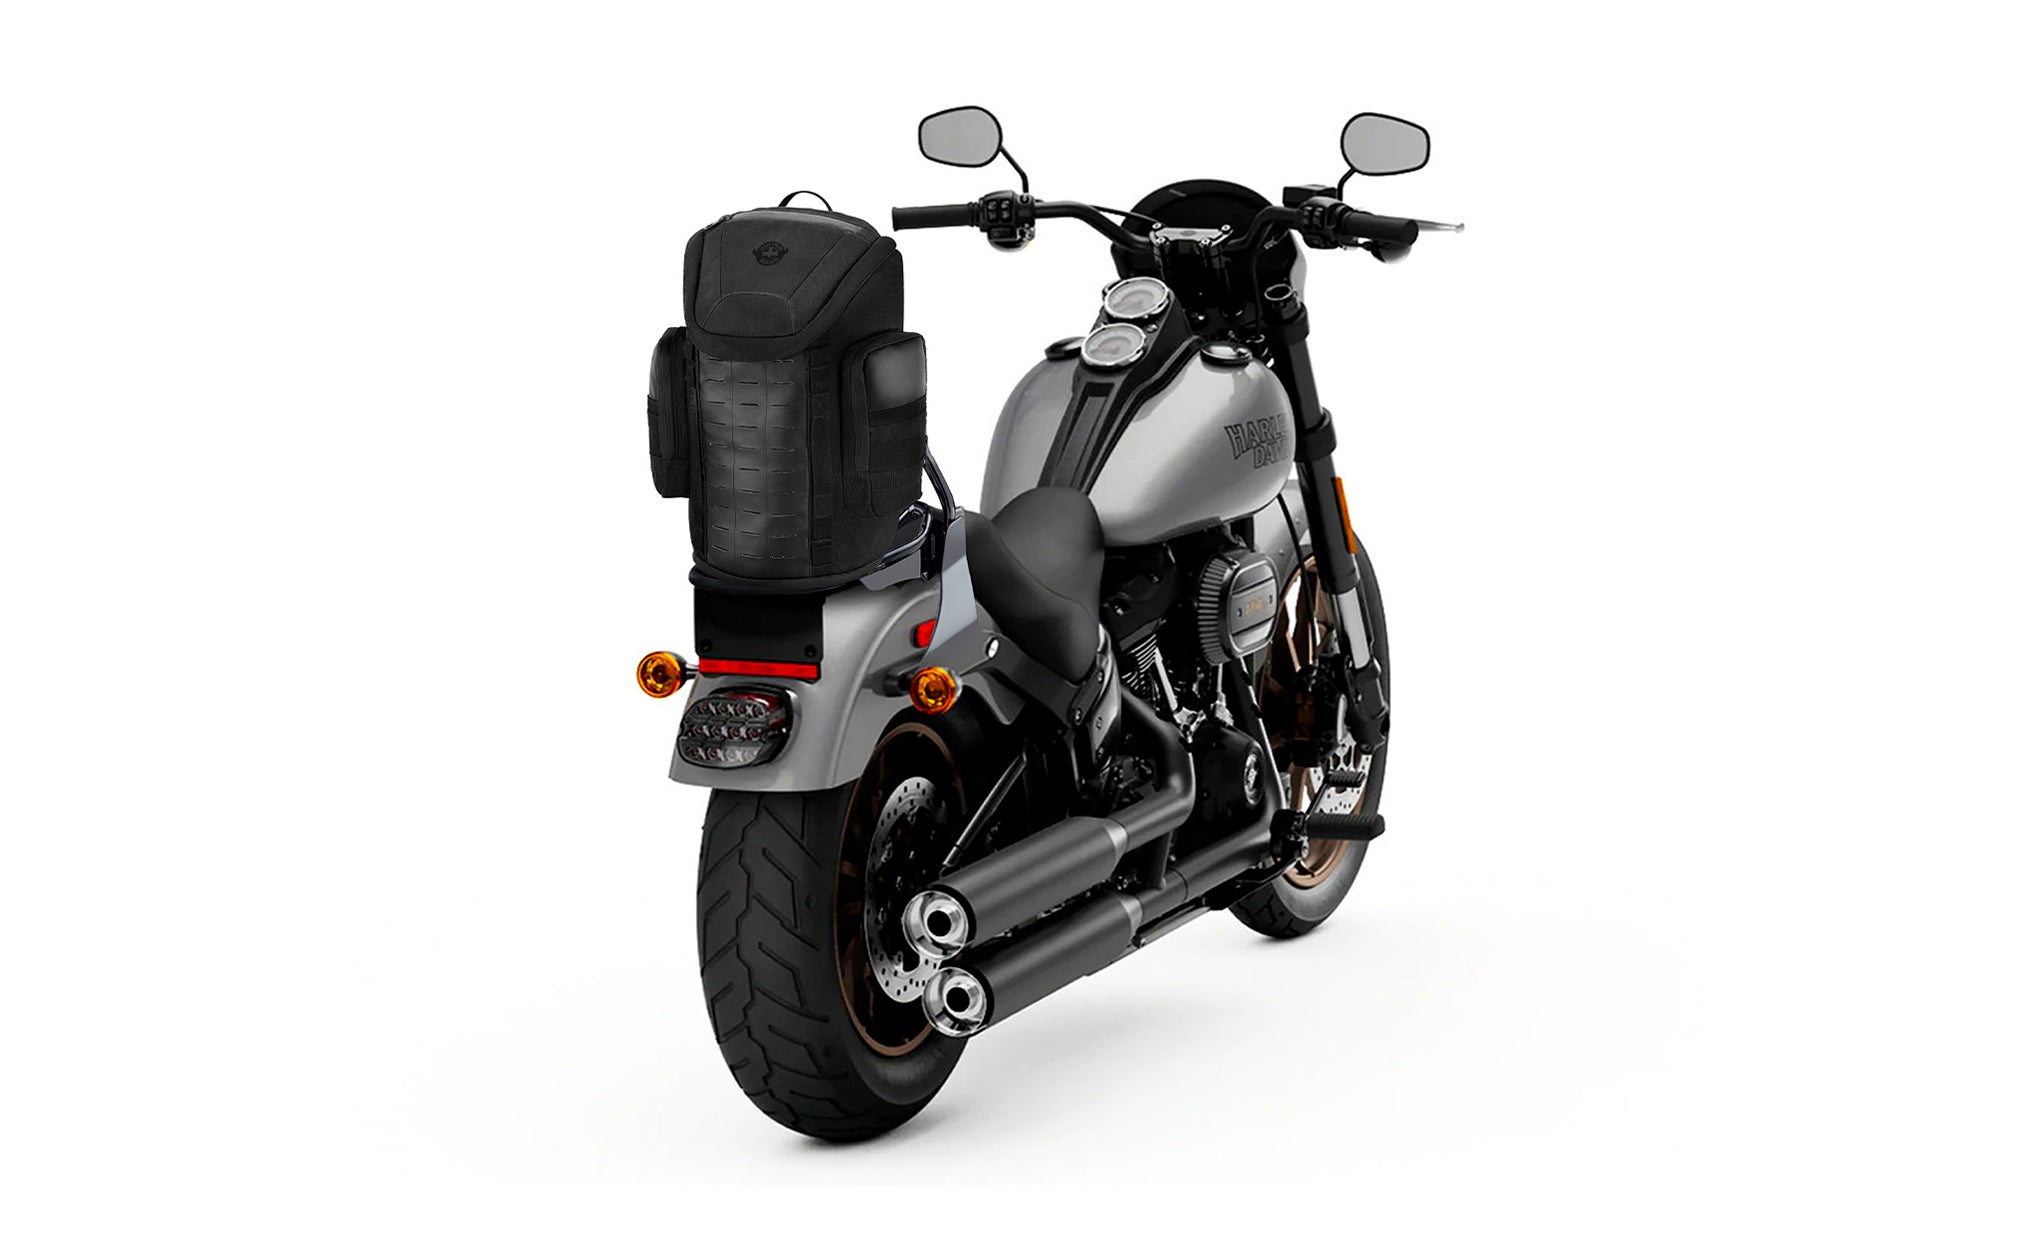 Viking Patriot Medium Motorcycle Tail Bag for Harley Davidson Bag on Bike View @expand